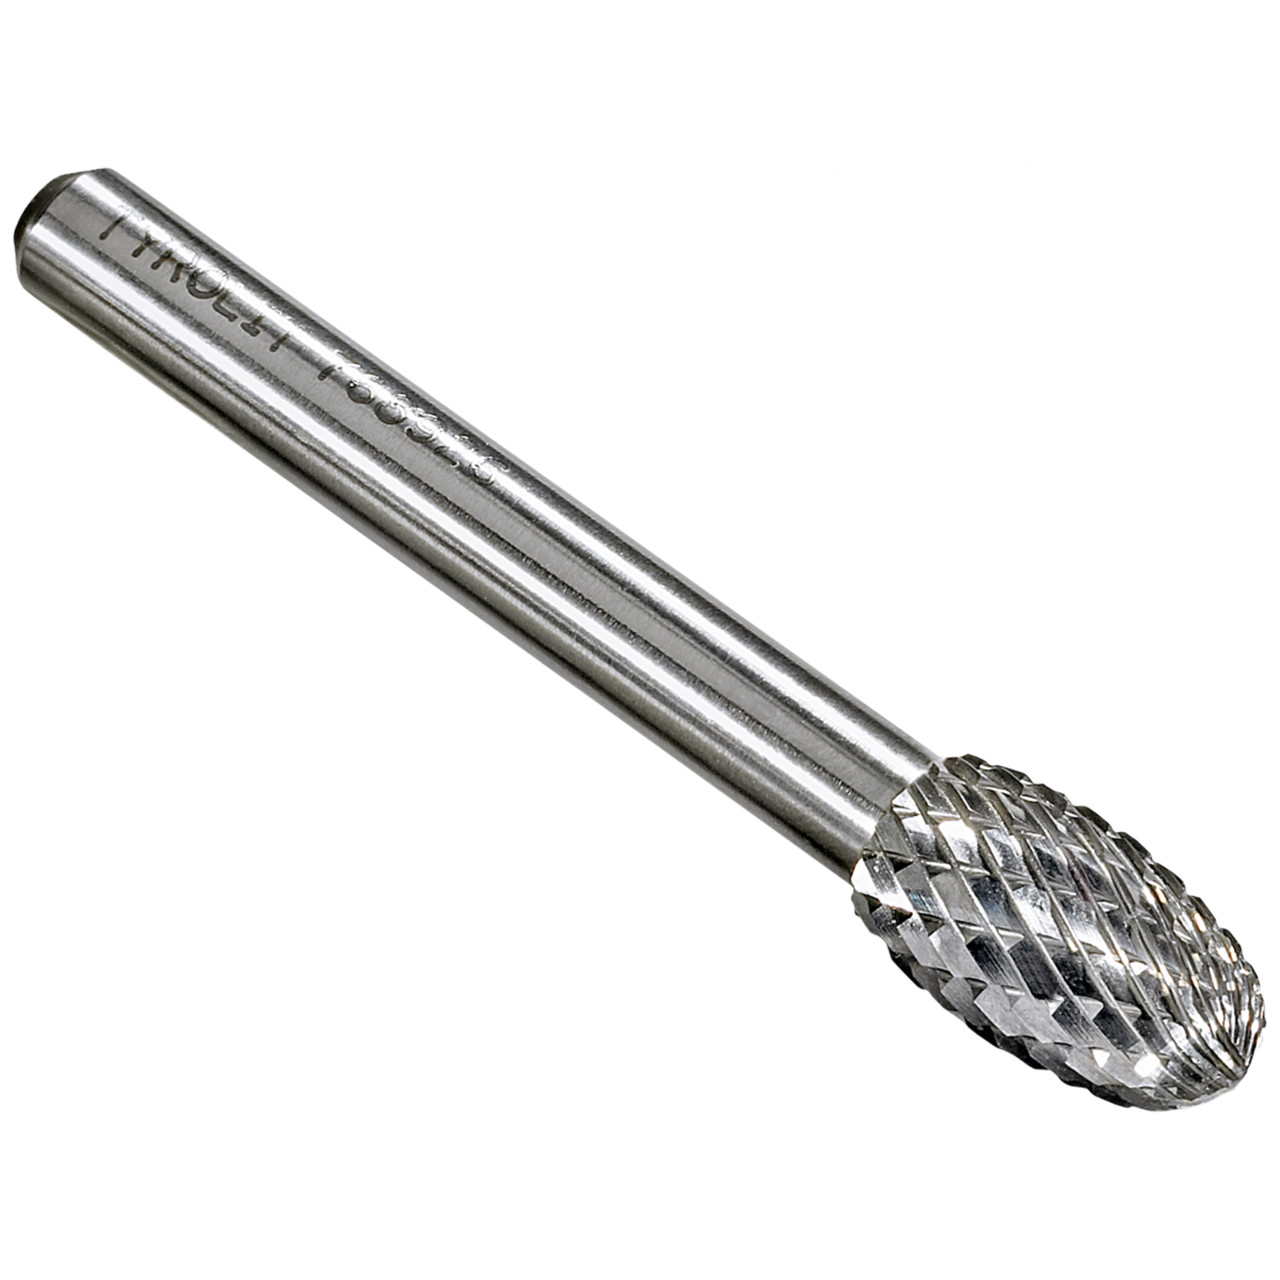 TYROLIT hardmetalen frees DxT-SxL 8x13-6x58 Voor gietijzer, staal en roestvrij staal, vorm: 52TRE - druppel, Art. 768924